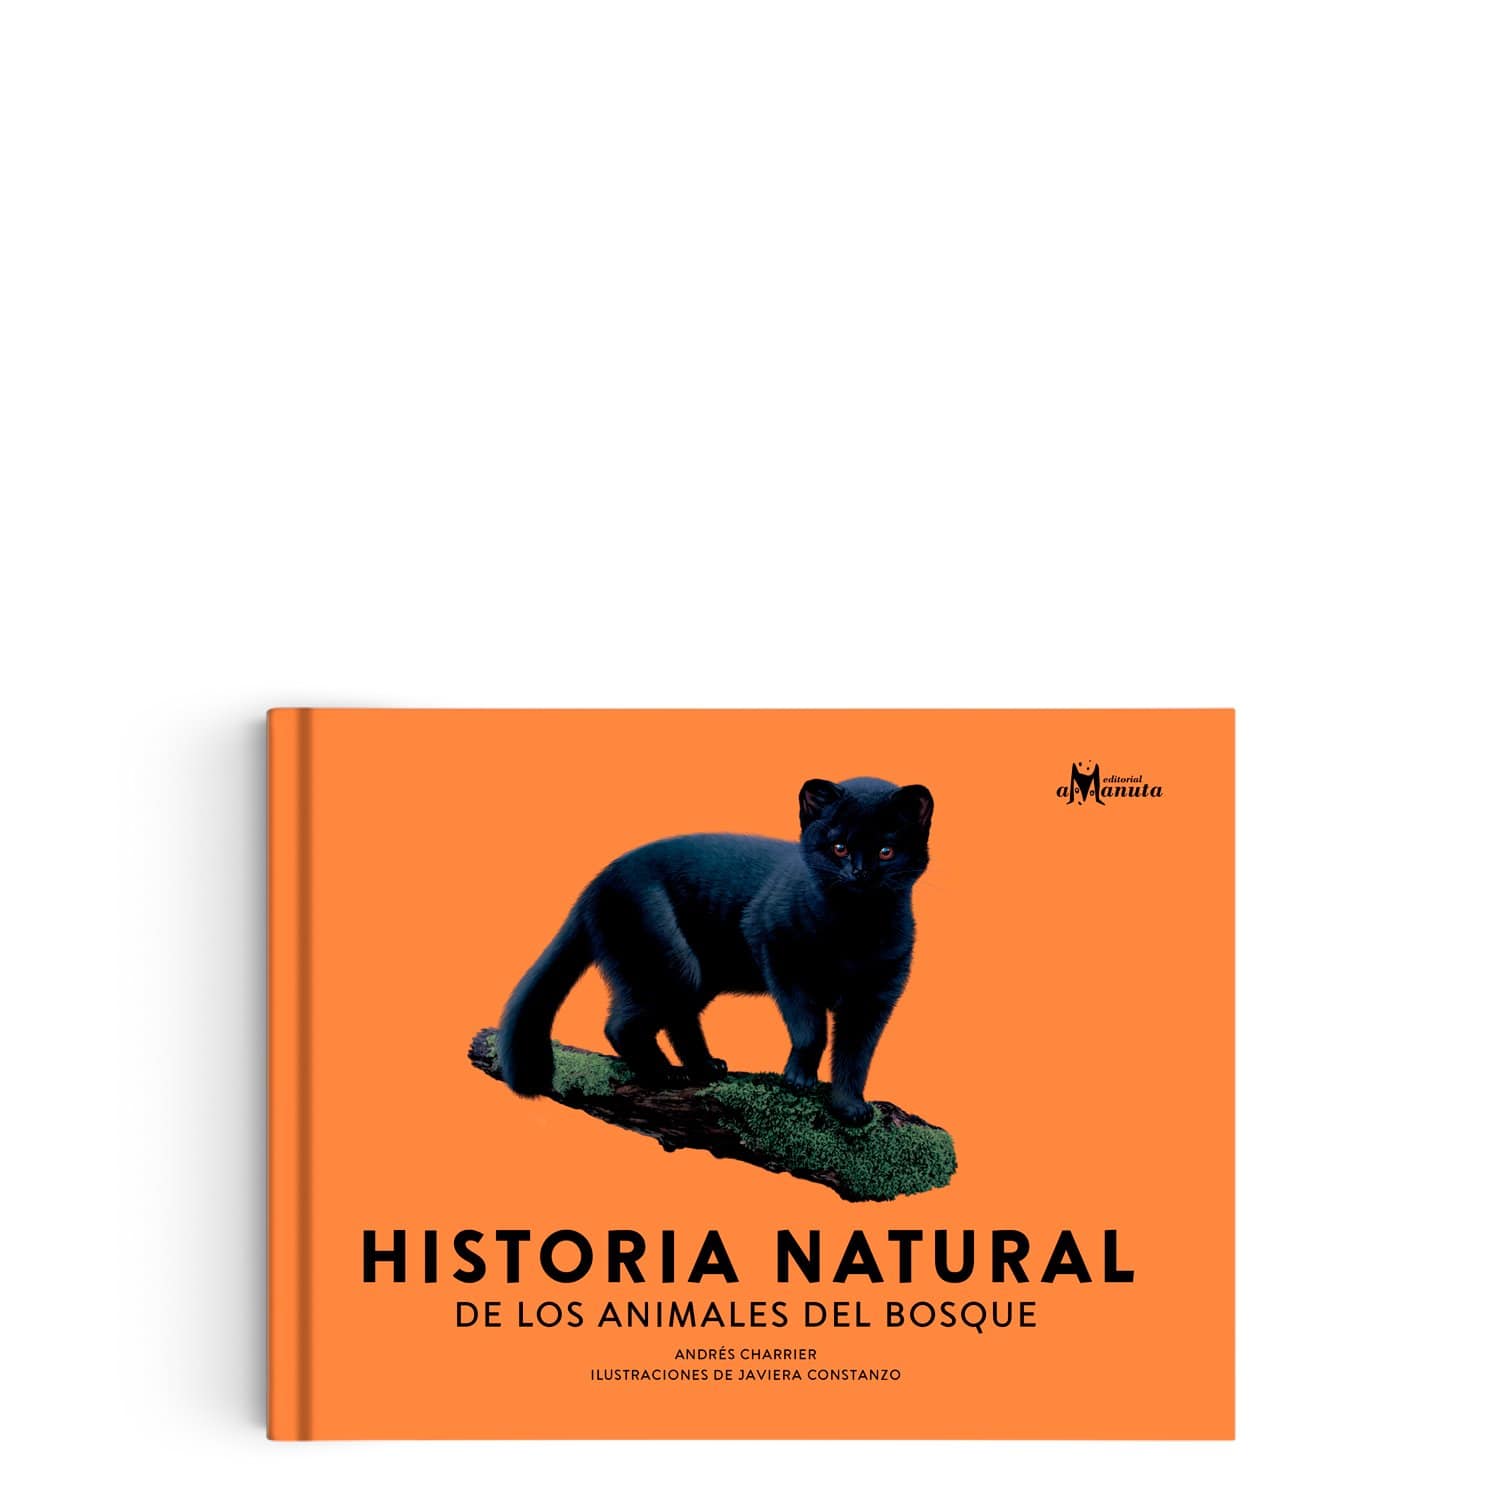 Libro "Historia Natural de los animales del bosque"